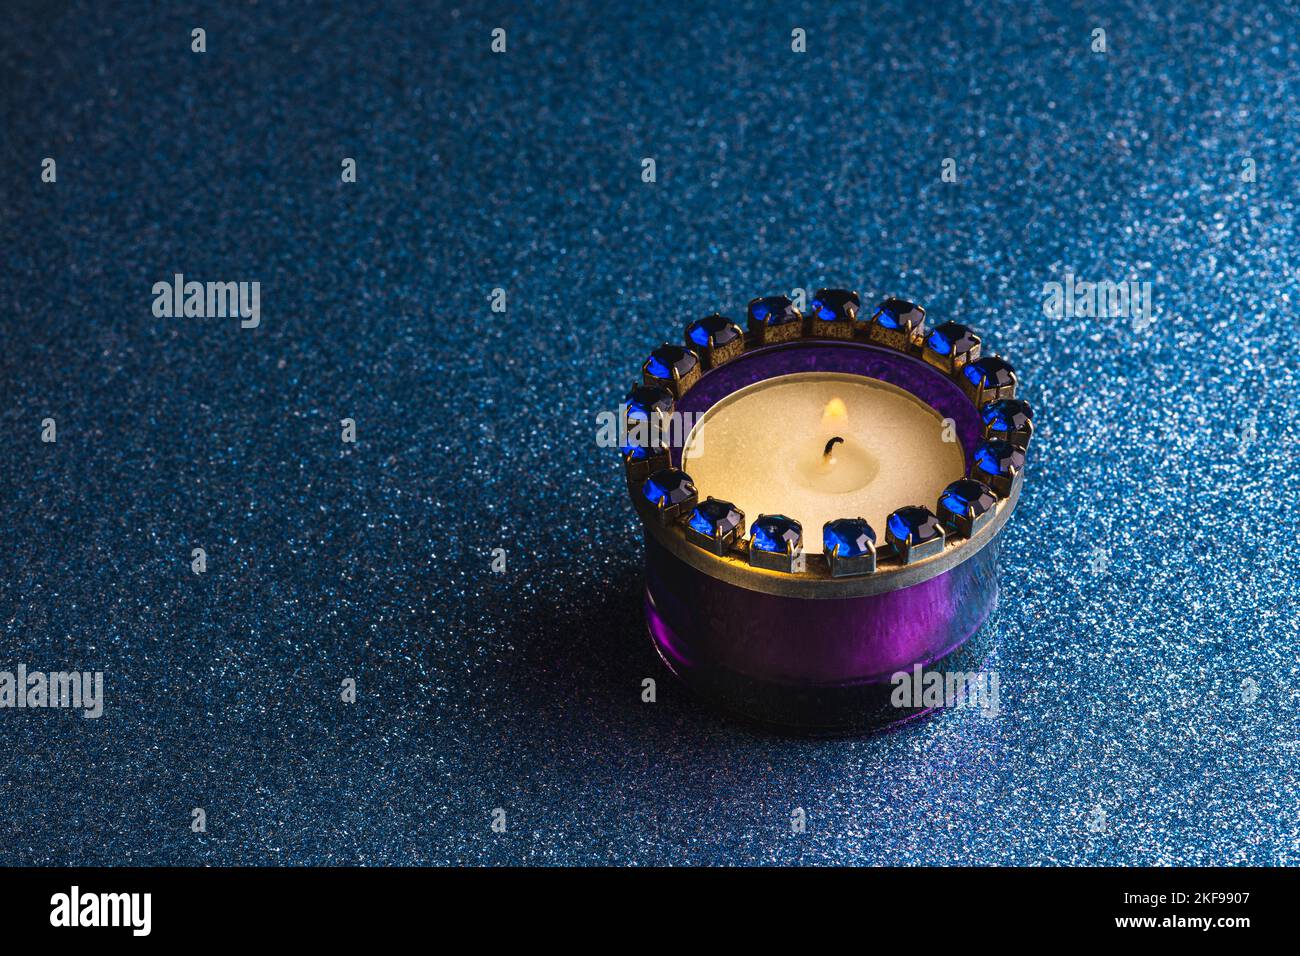 Eine brennende Teelicht Kerze in einem lila Glashalter auf einem dunkelblauen Hintergrund mit Glitzer. Stockfoto